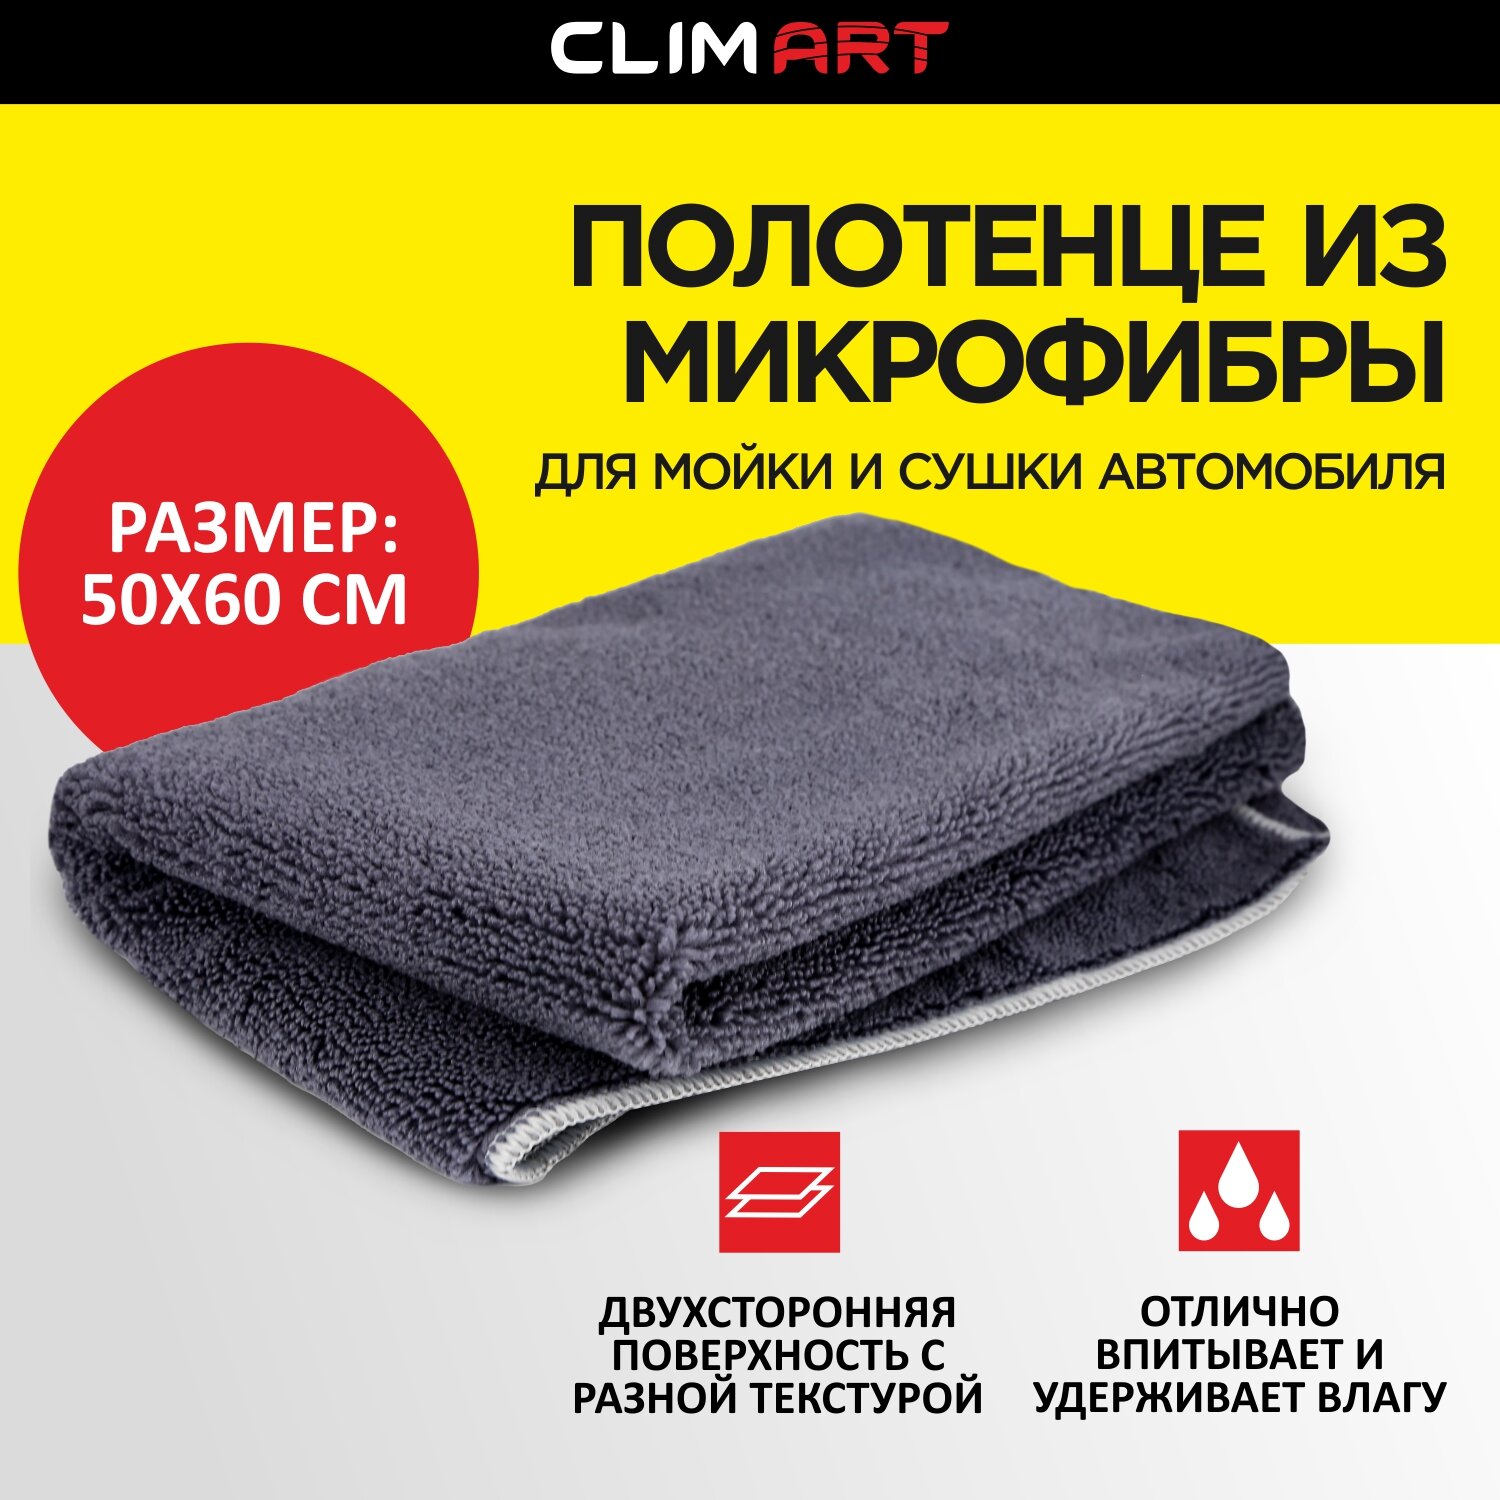 Полотенце для мойки и сушки автомобиля CLIMART из микрофибры 50x60 см